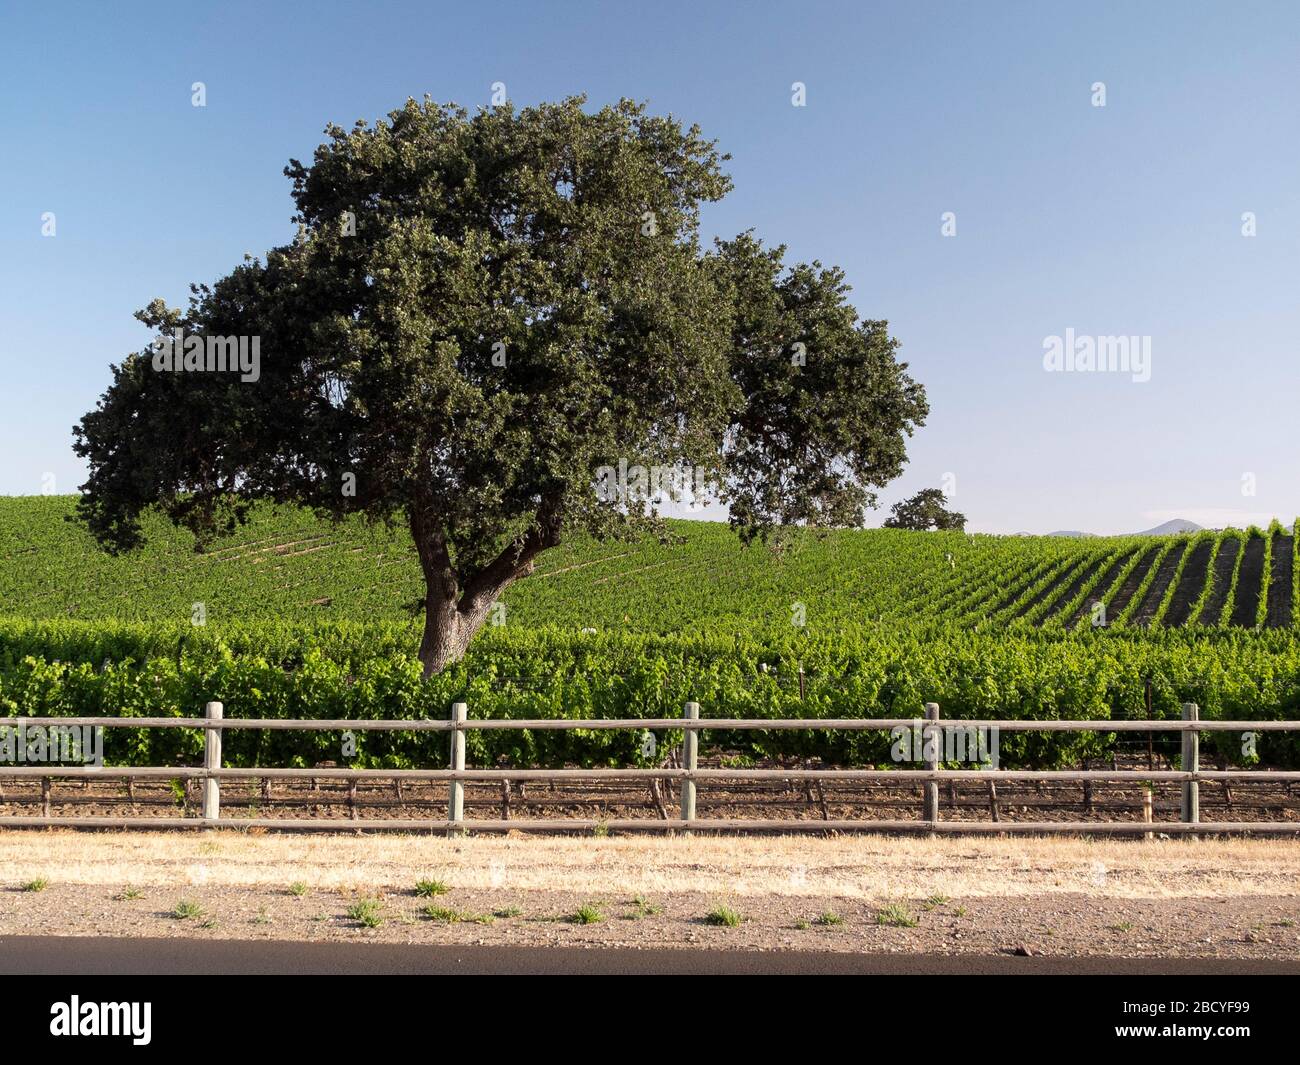 Vignoble dans la région viticole de la vallée de Santa Ynez Banque D'Images